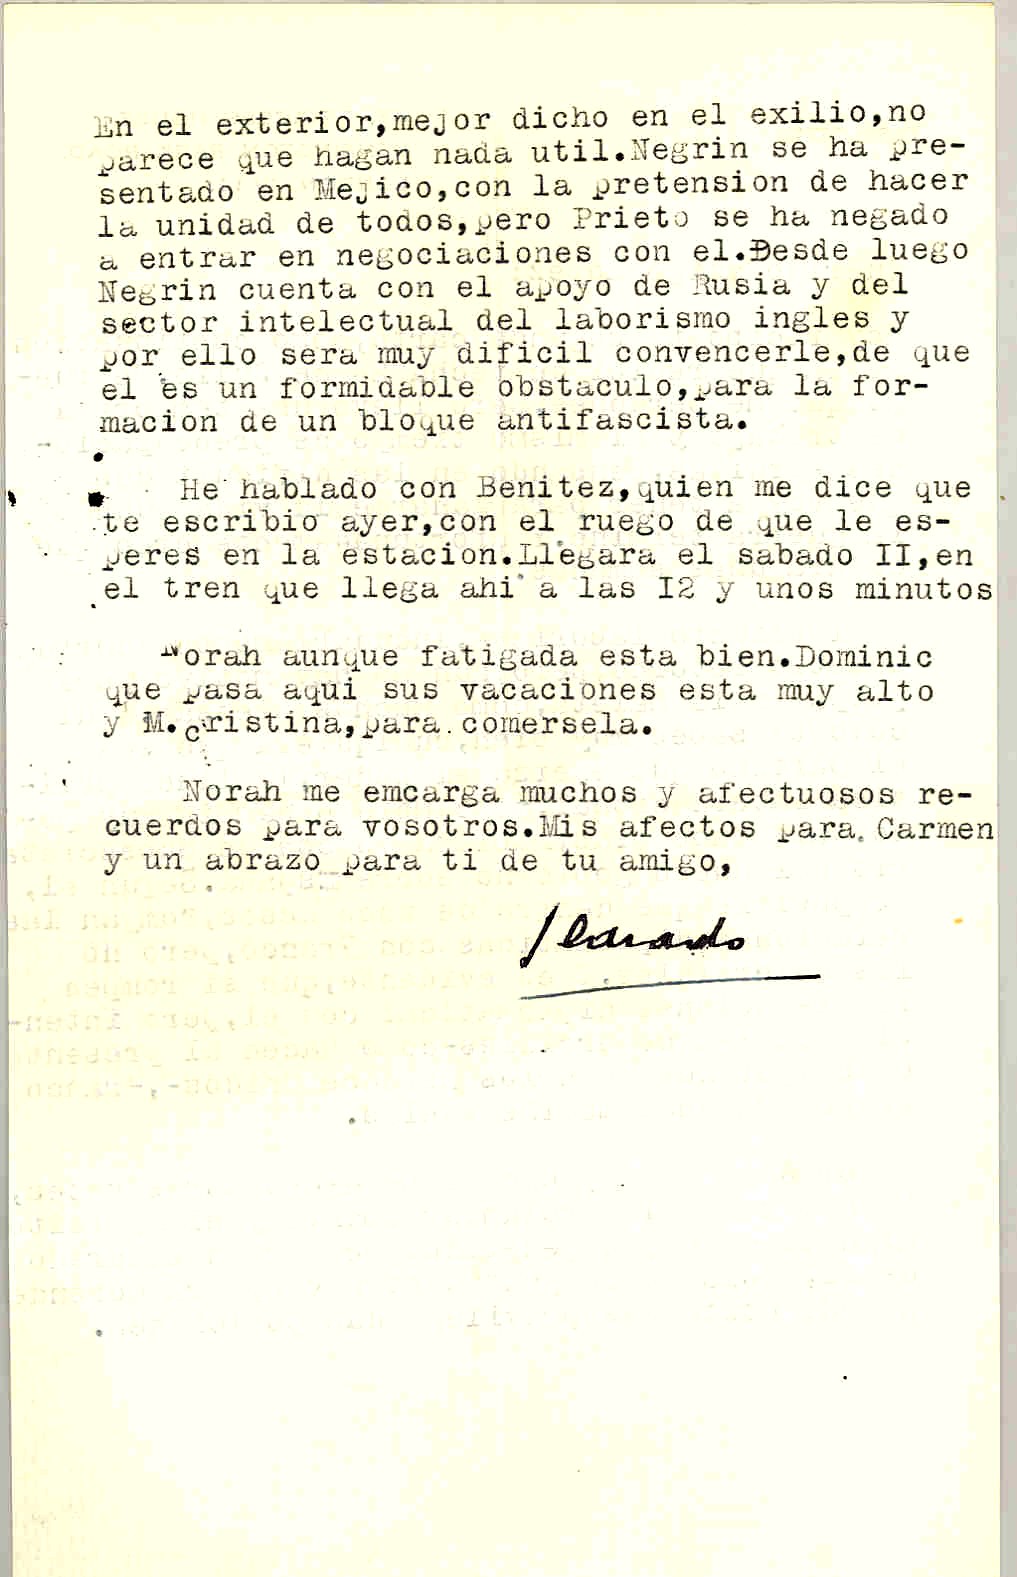 Carta de Segismundo Casado contando que el triunfo laborista romperá las relaciones diplomáticas con Franco y en exilio Prieto se niega a colaborar con Negrín, pero este es apoyado por Rusia y el laborismo inglés.